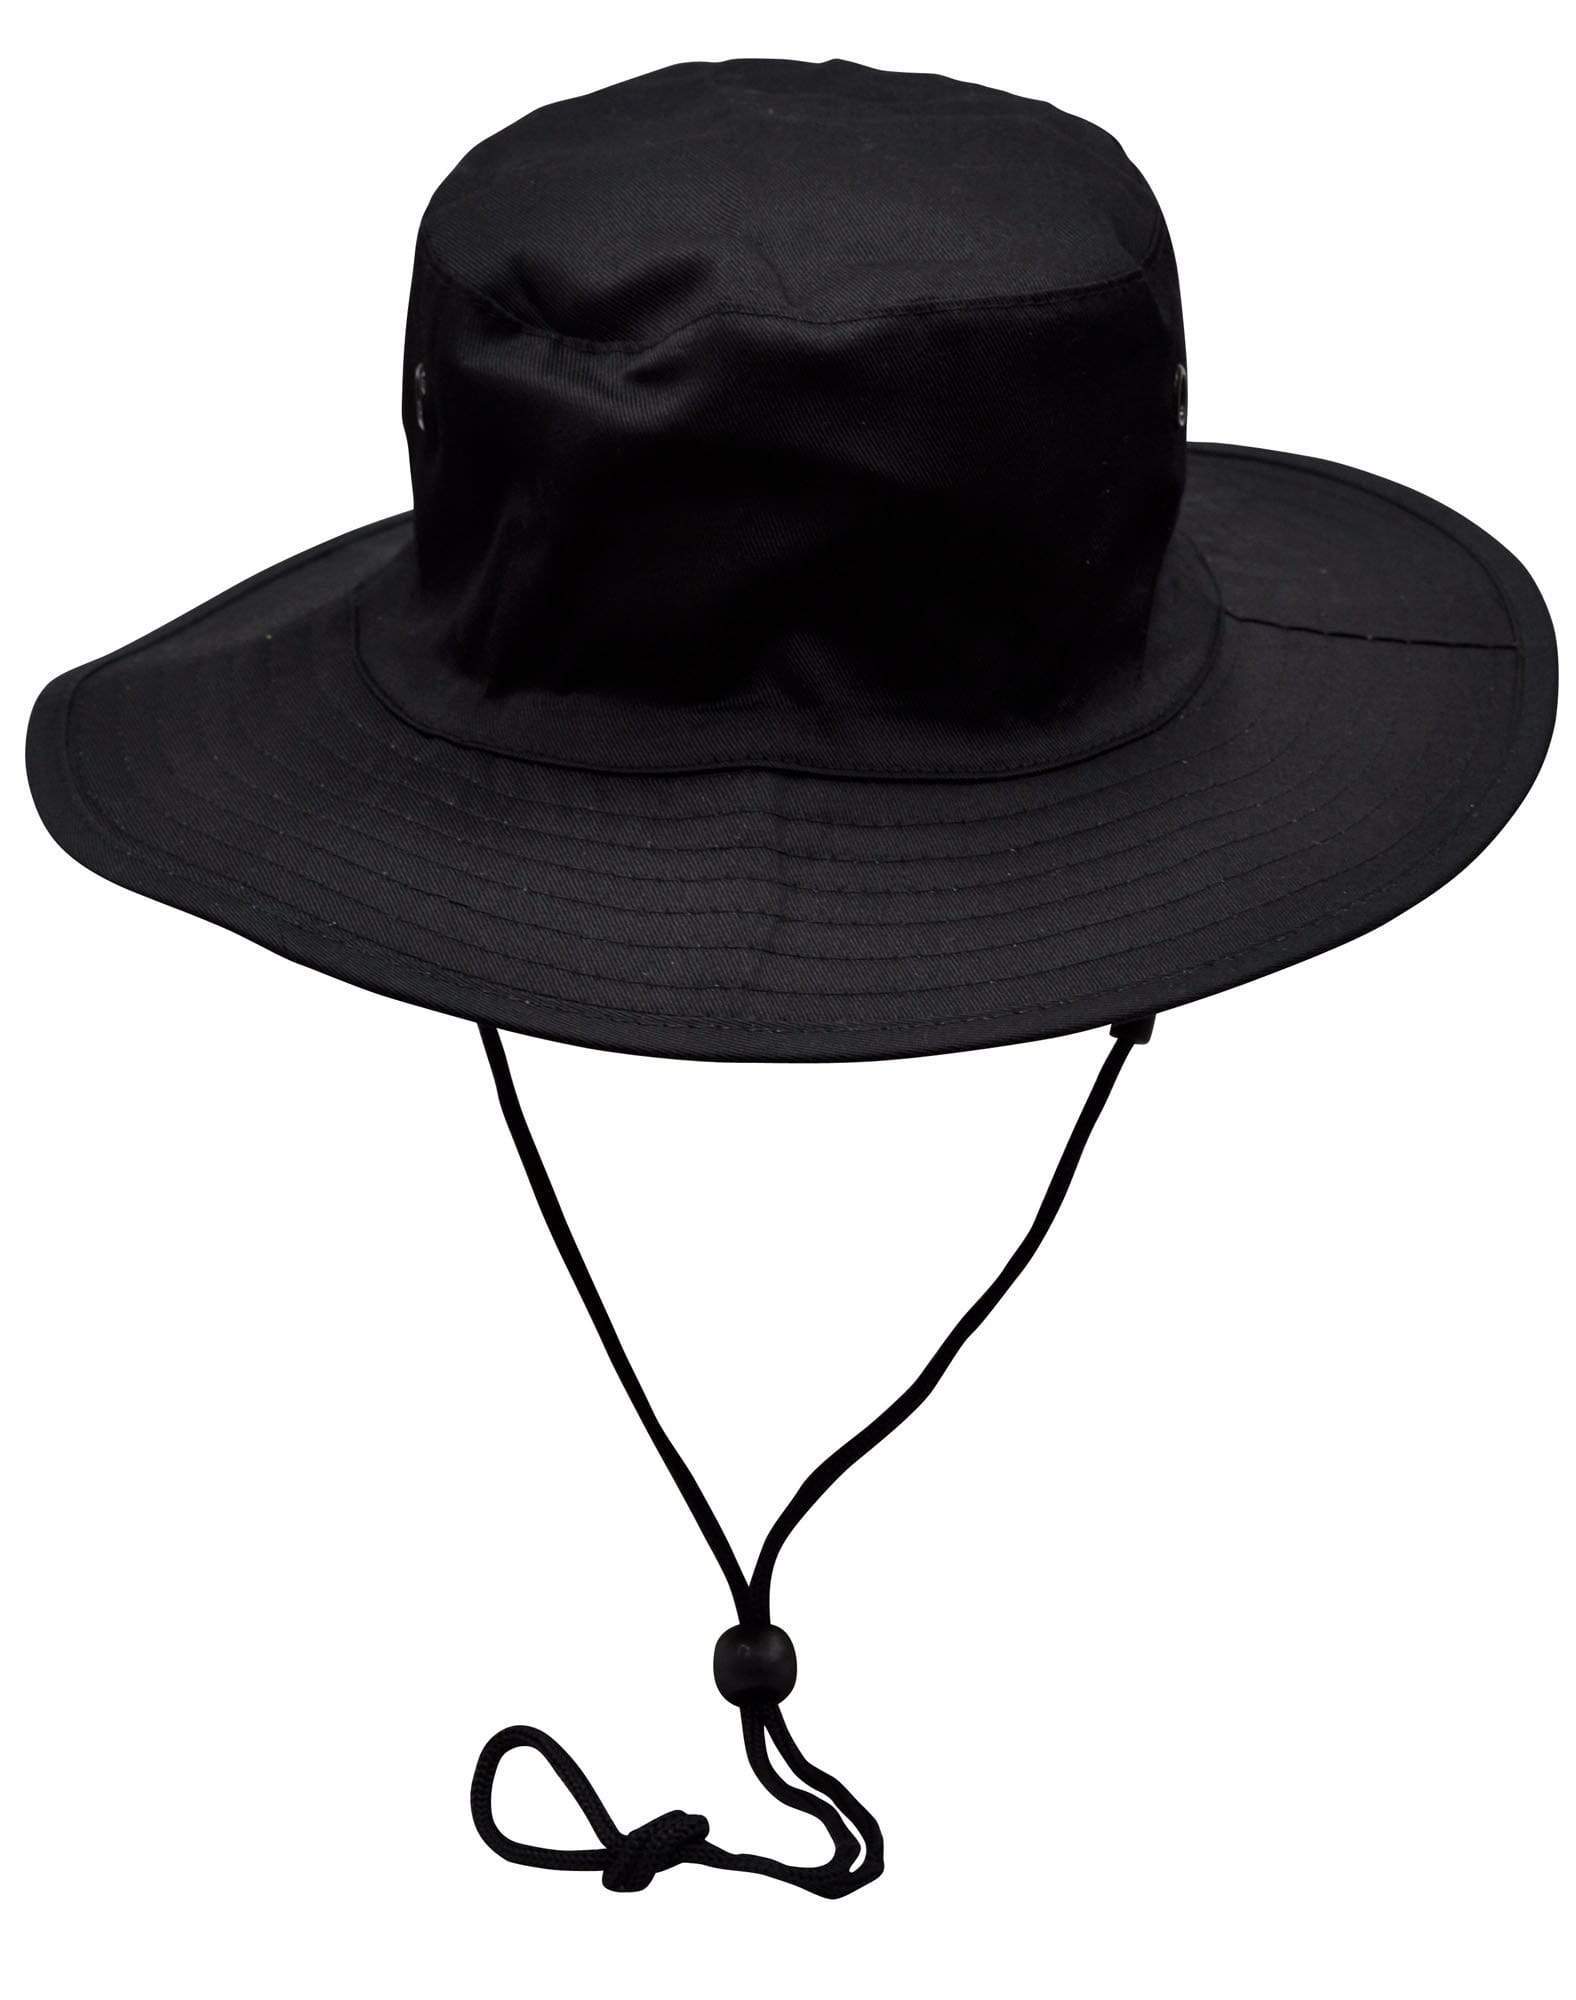 Surf Hat With Break-away Strap H1035 Active Wear Winning Spirit Black S 